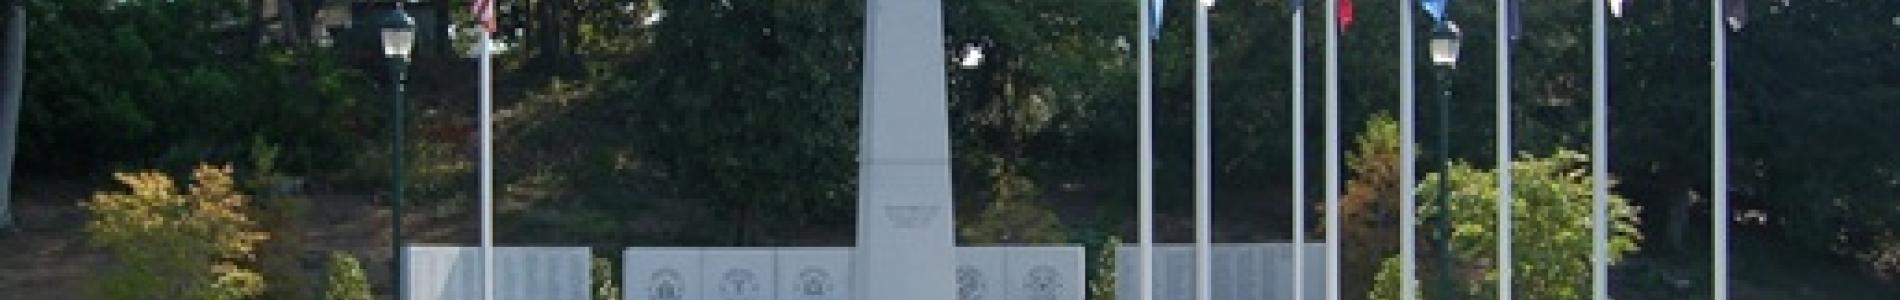 veterans_memorial